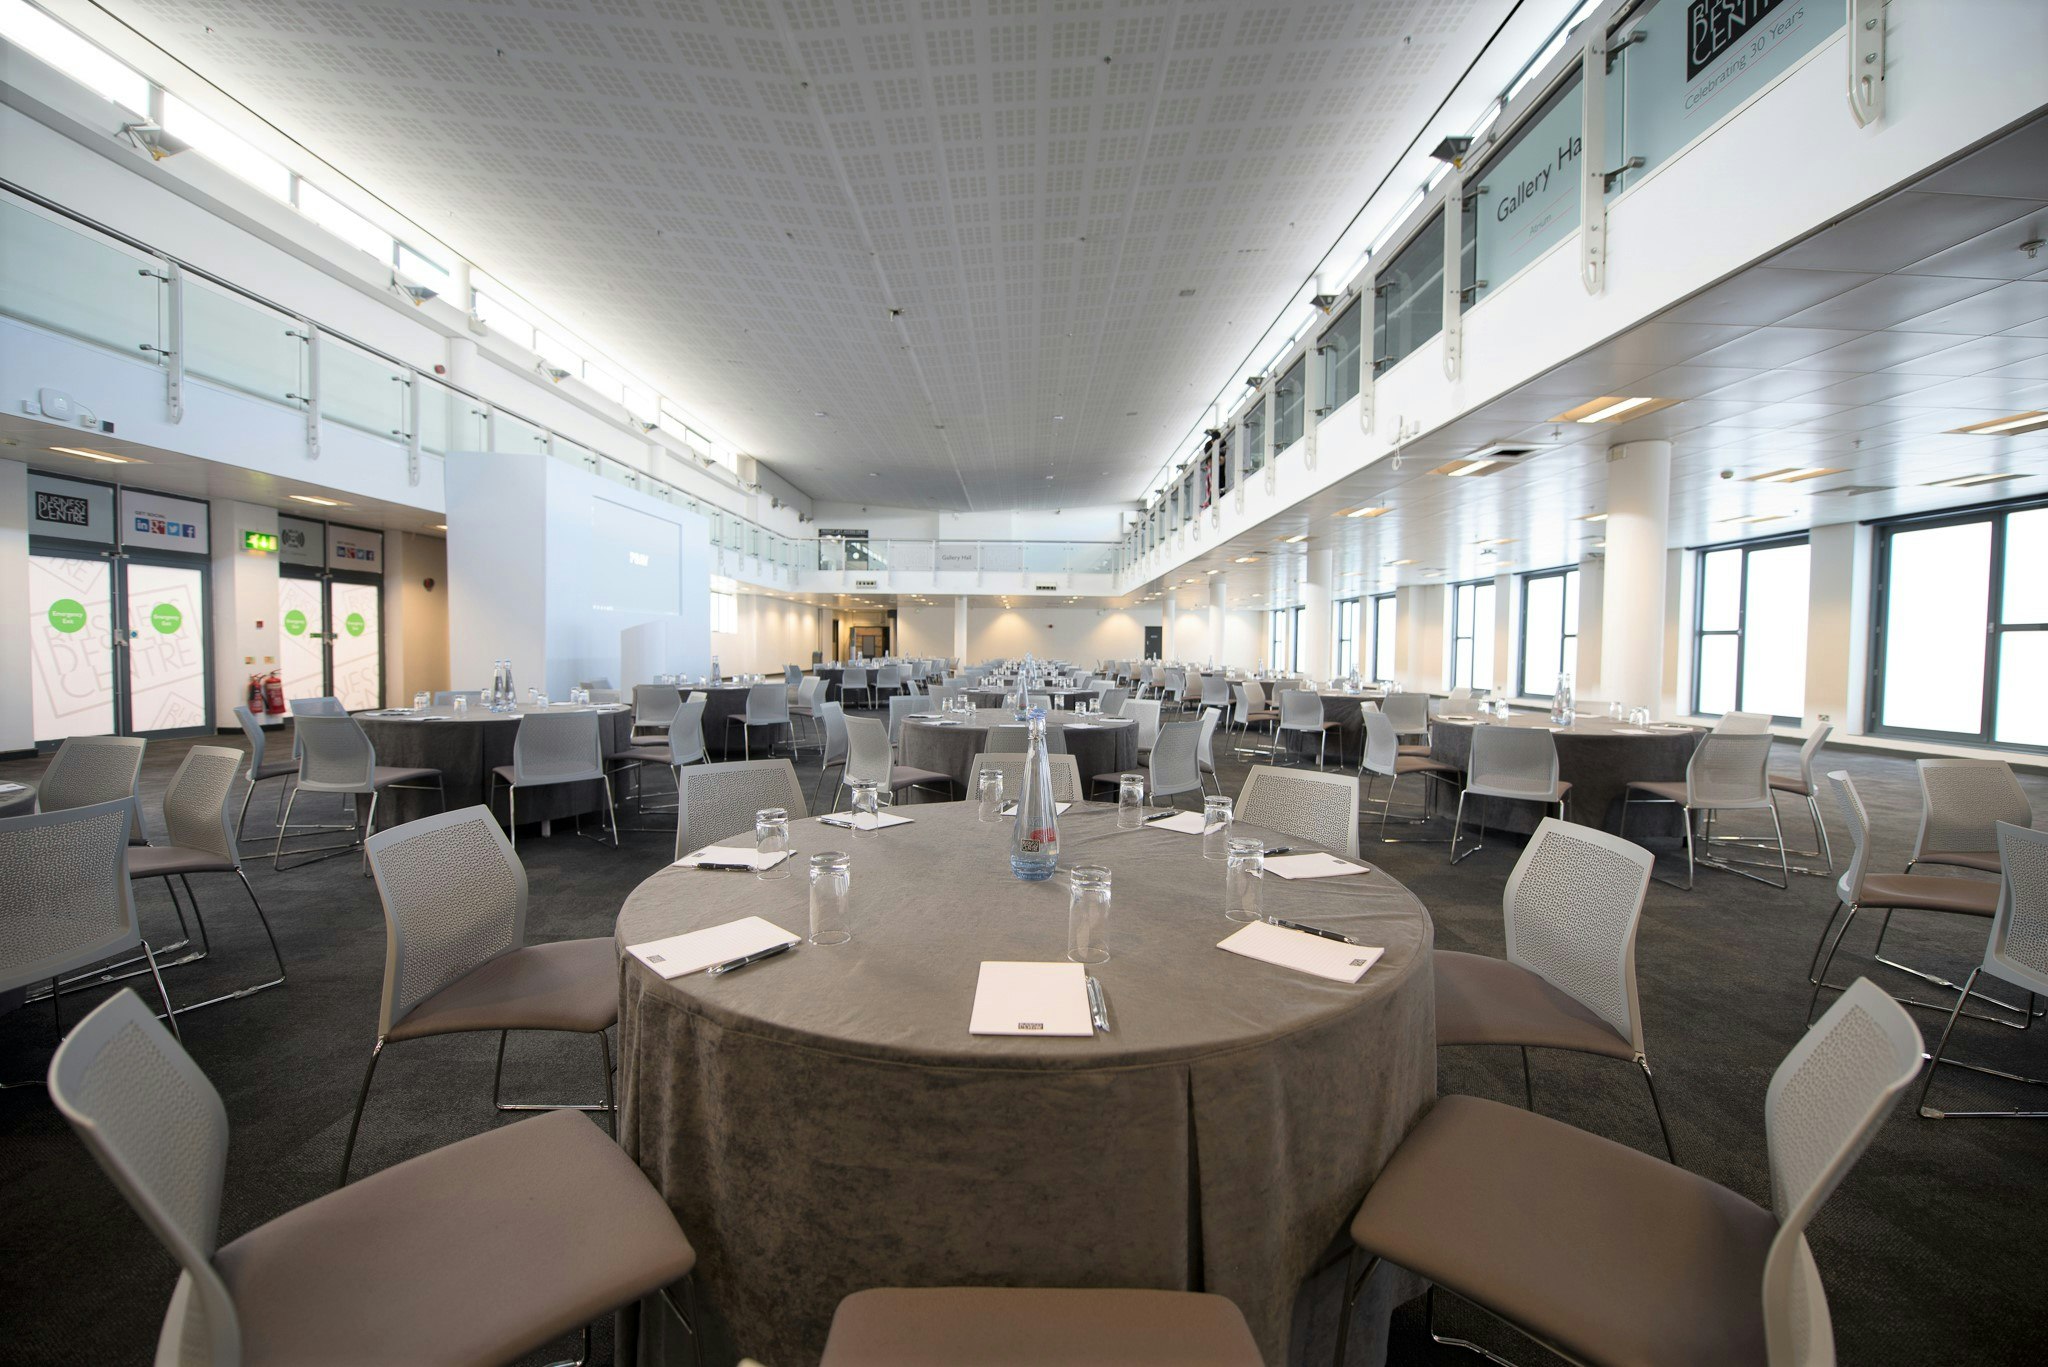 Business Design Centre - Gallery Hall/Atrium image 9